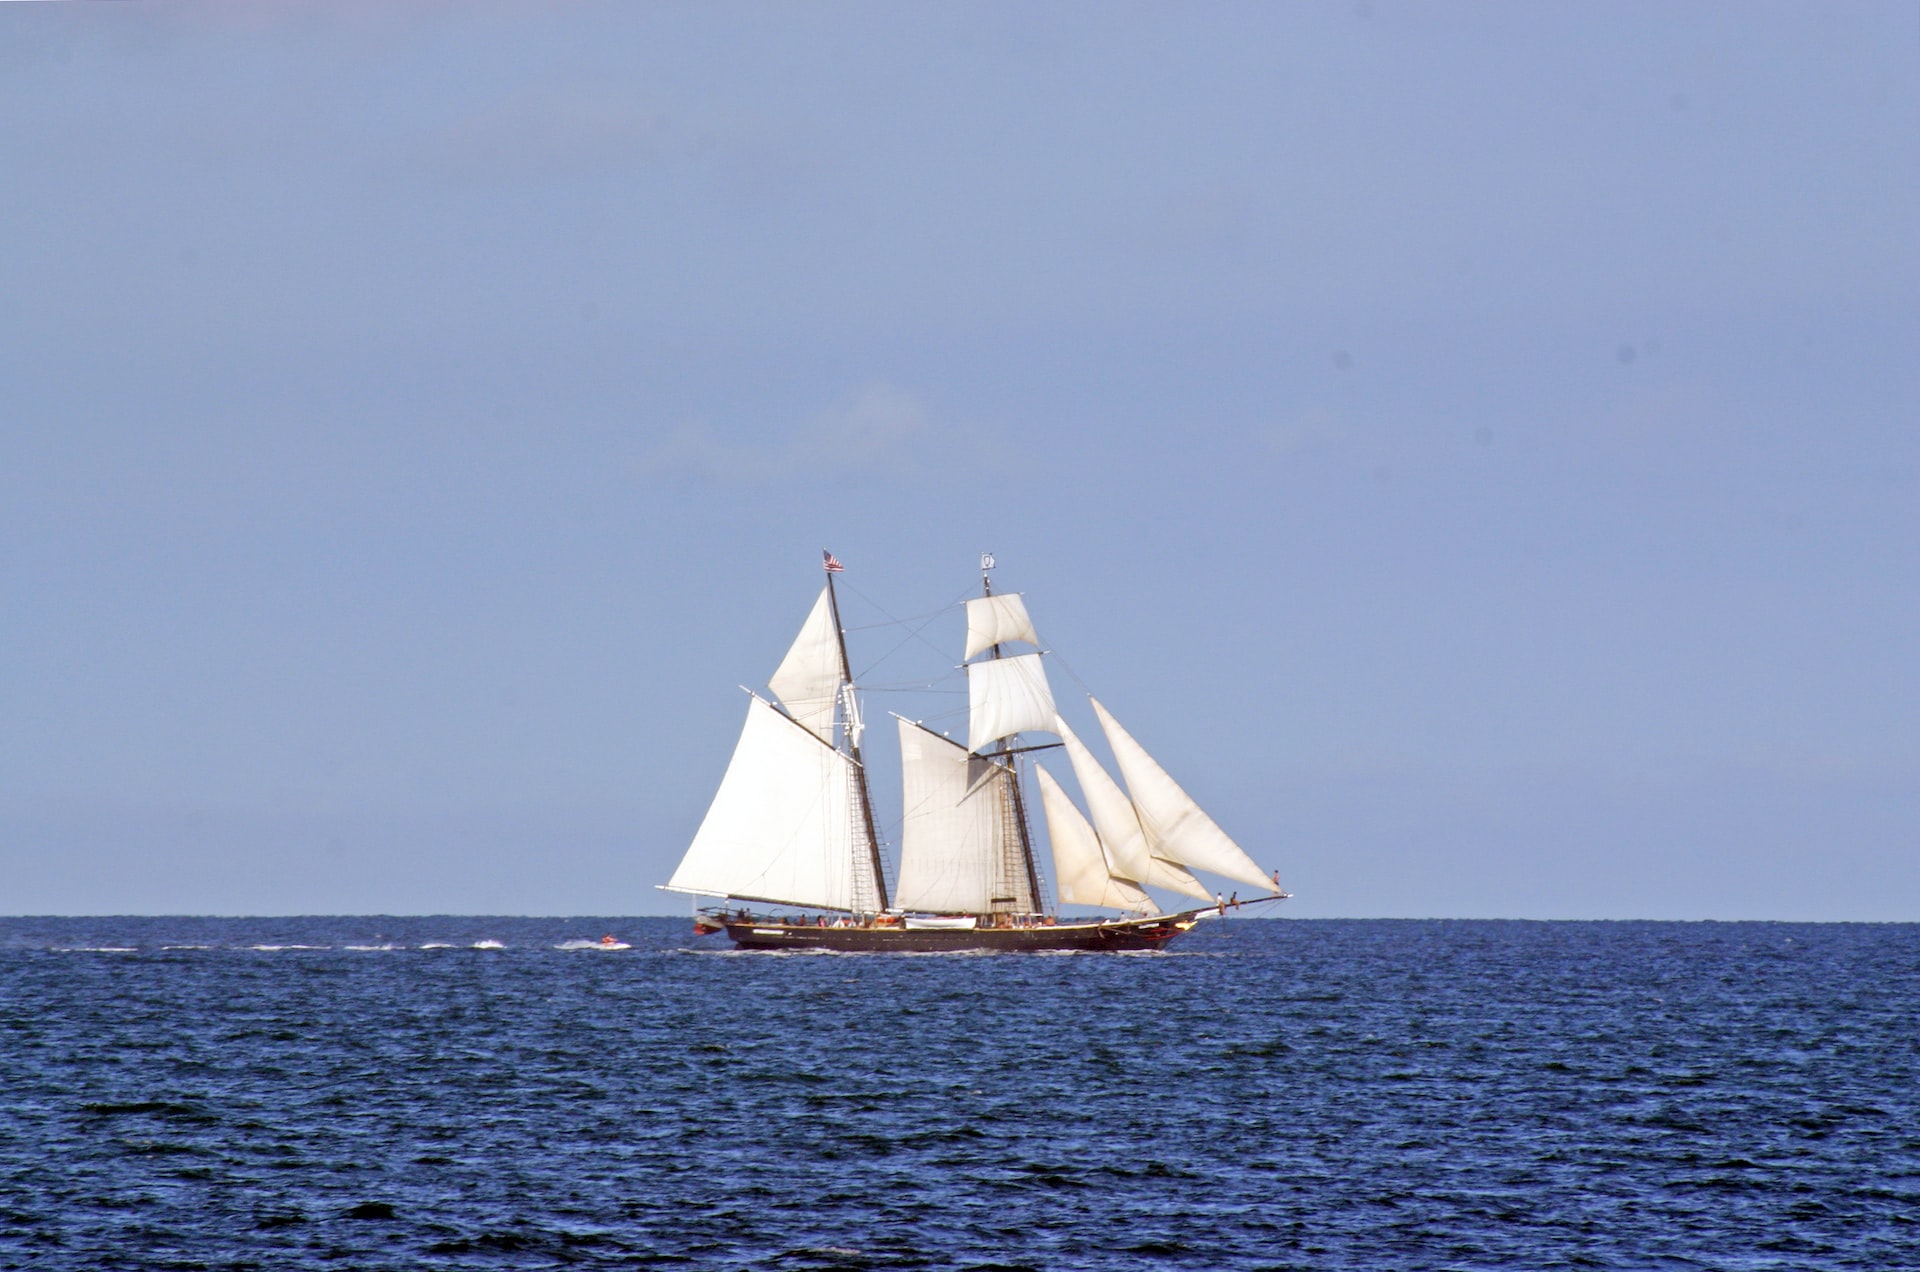 a sail boat at sea